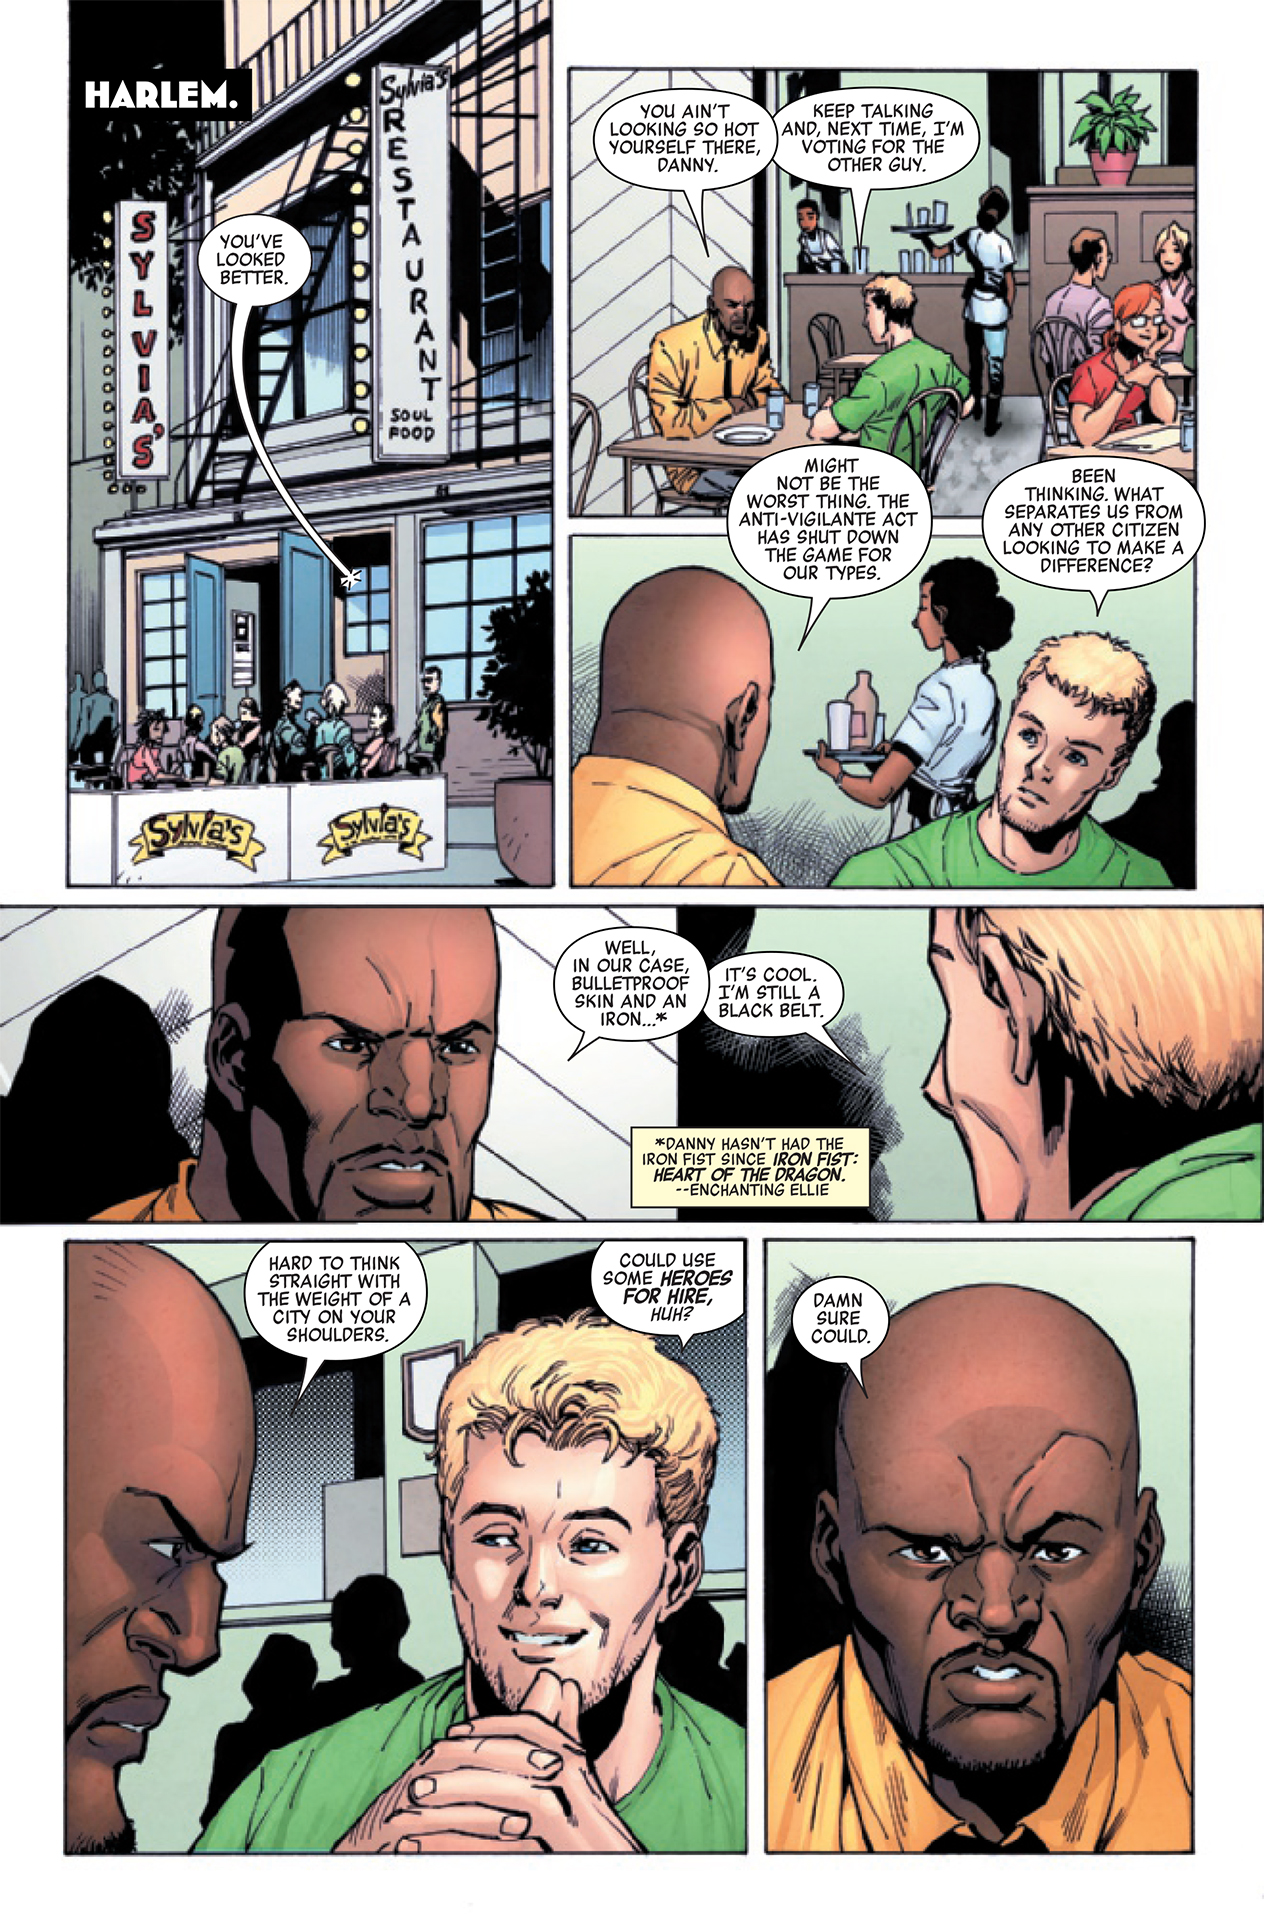 Мэру Кейджу придется нарушить законы Нью-Йорка, запрещающие супергероев, в Luke Cage: Gang War #1.